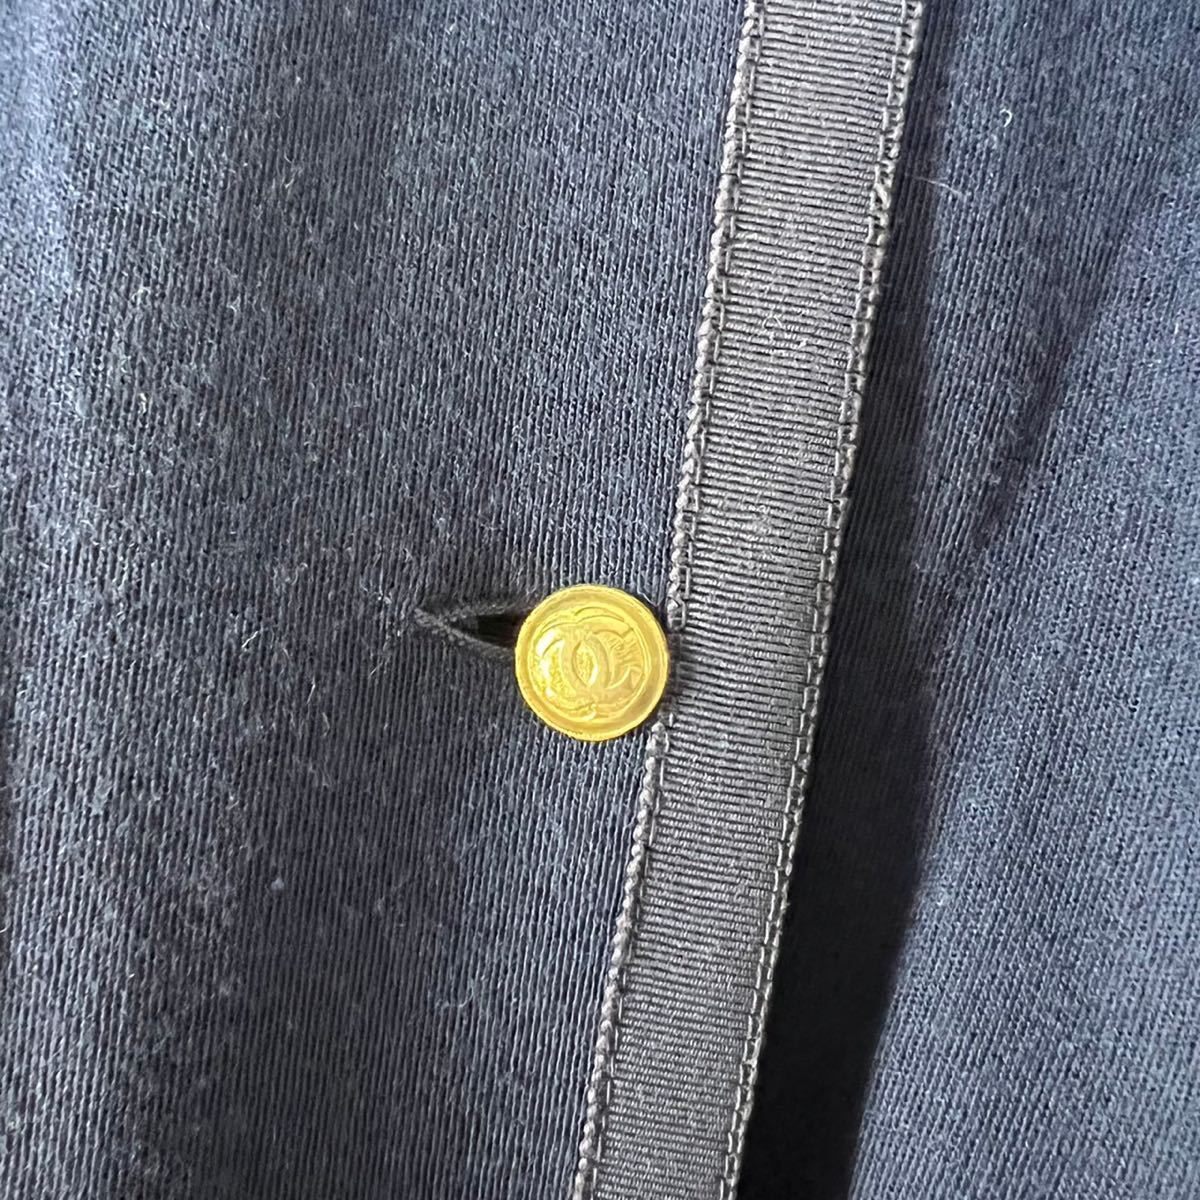 CHANEL シャネル 金ボタン セットアップ ノーカラー スカートスーツ 